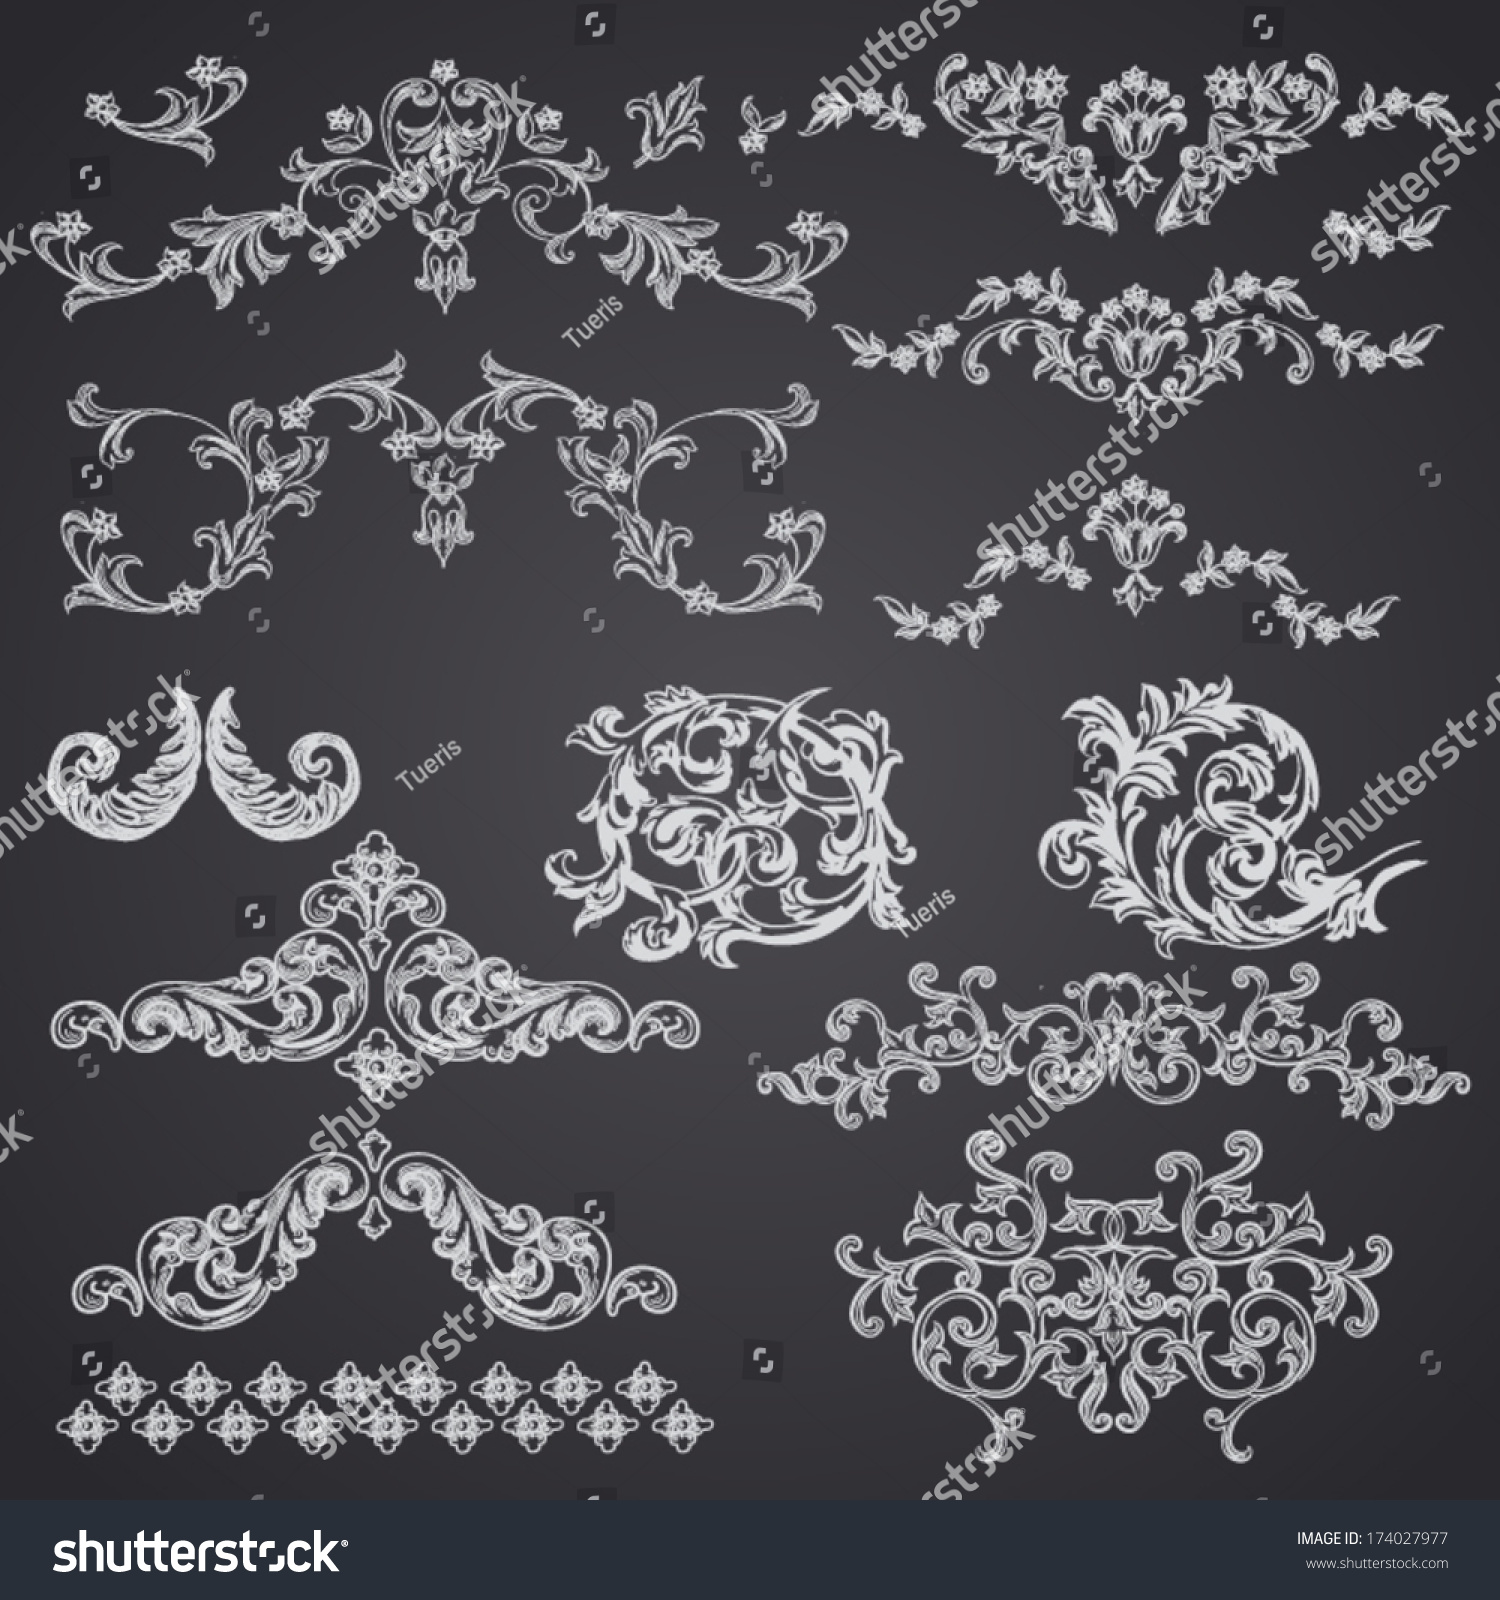 Vector vintage baroque engraving floral scroll filigree design #174027977